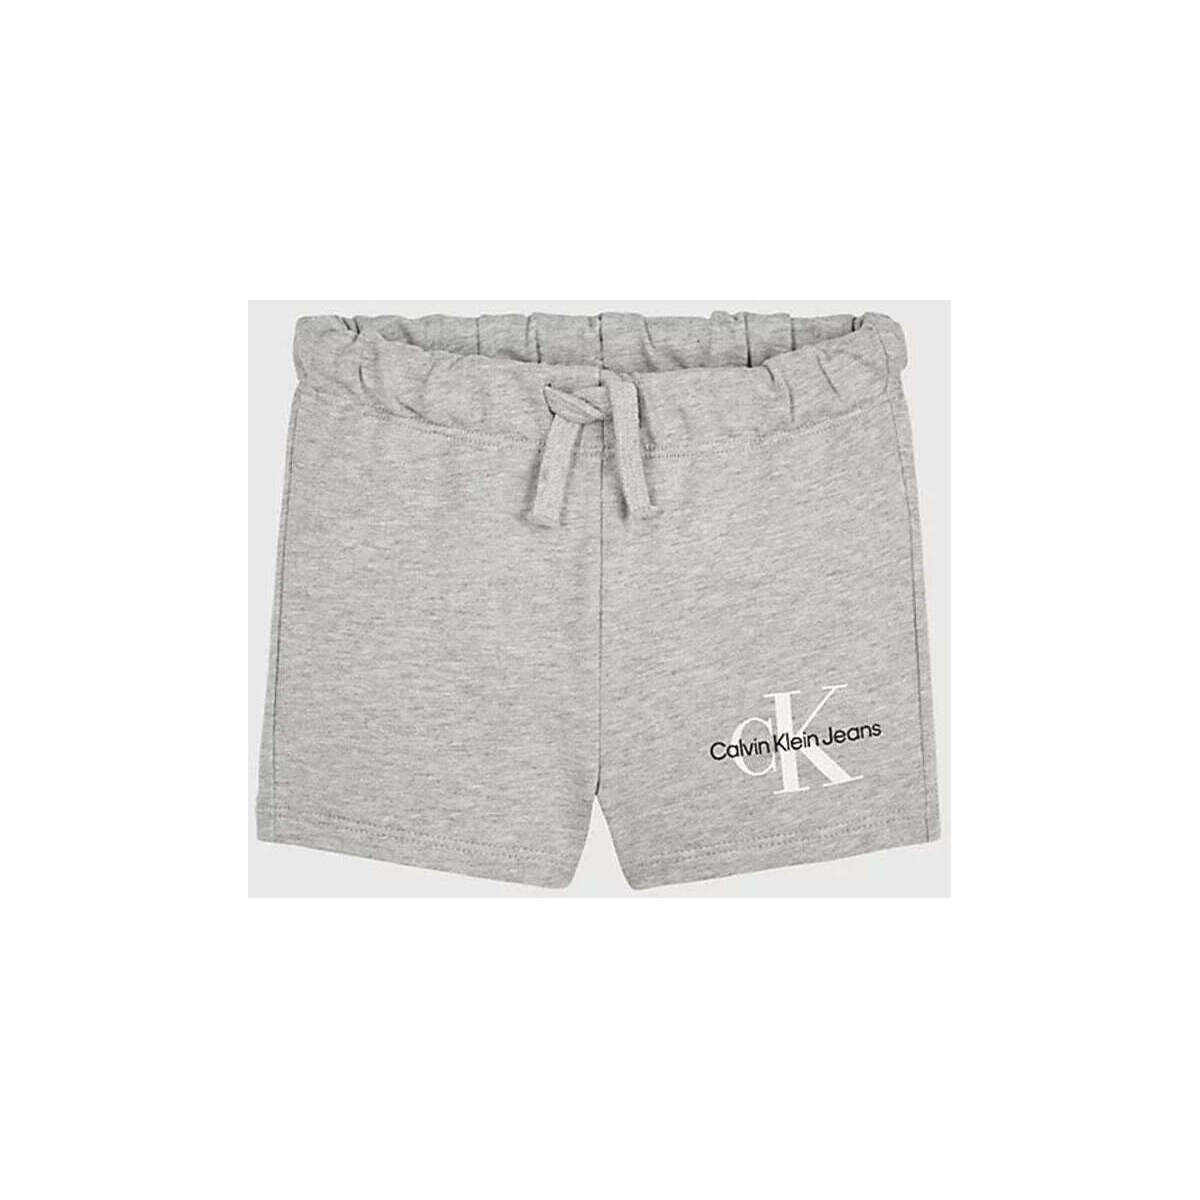 Vêtements Enfant Shorts / Bermudas Calvin Klein Jeans  Gris